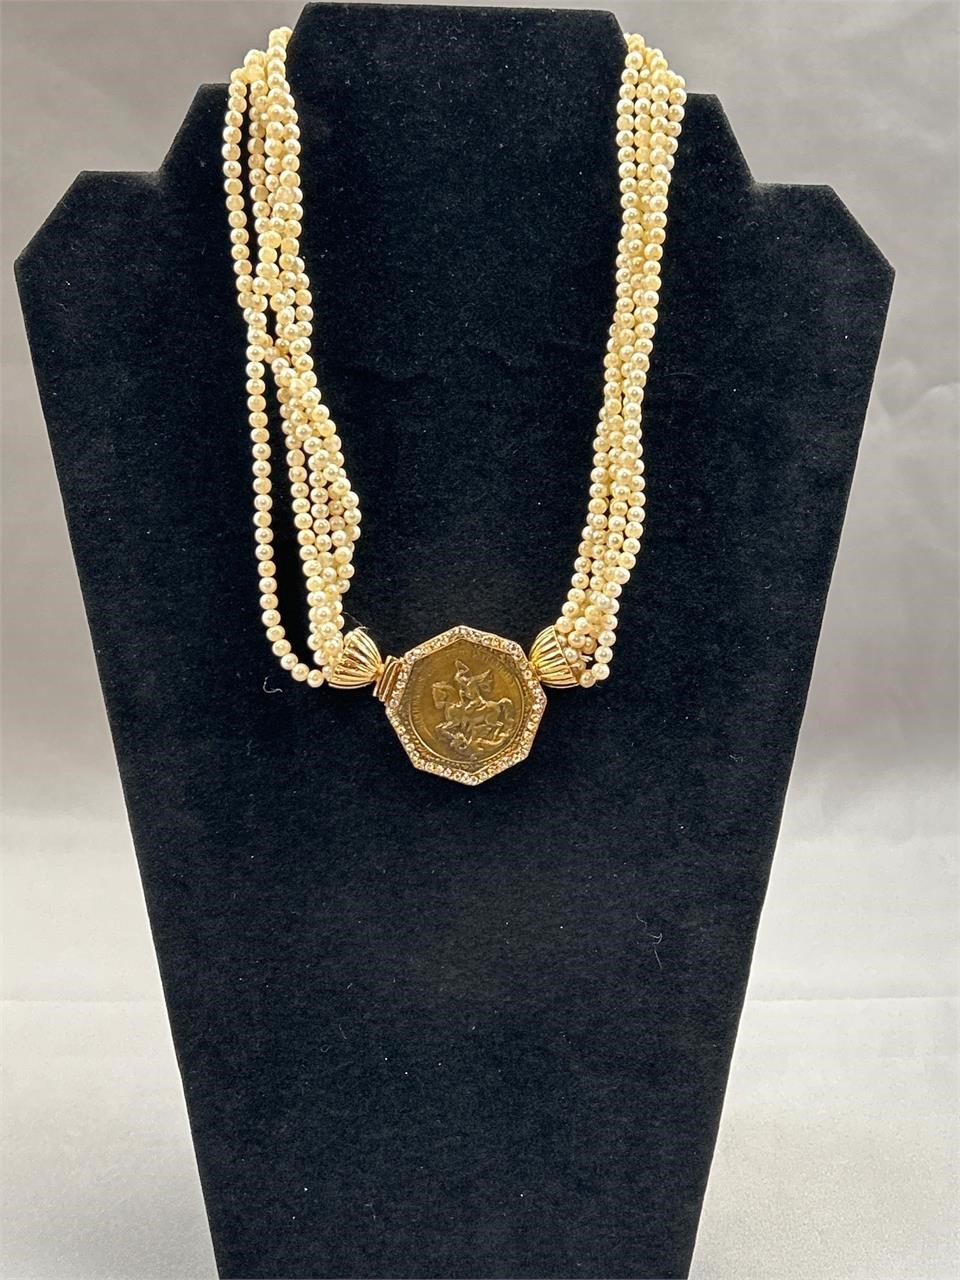 Vintage (Bijoux Casc?) necklace